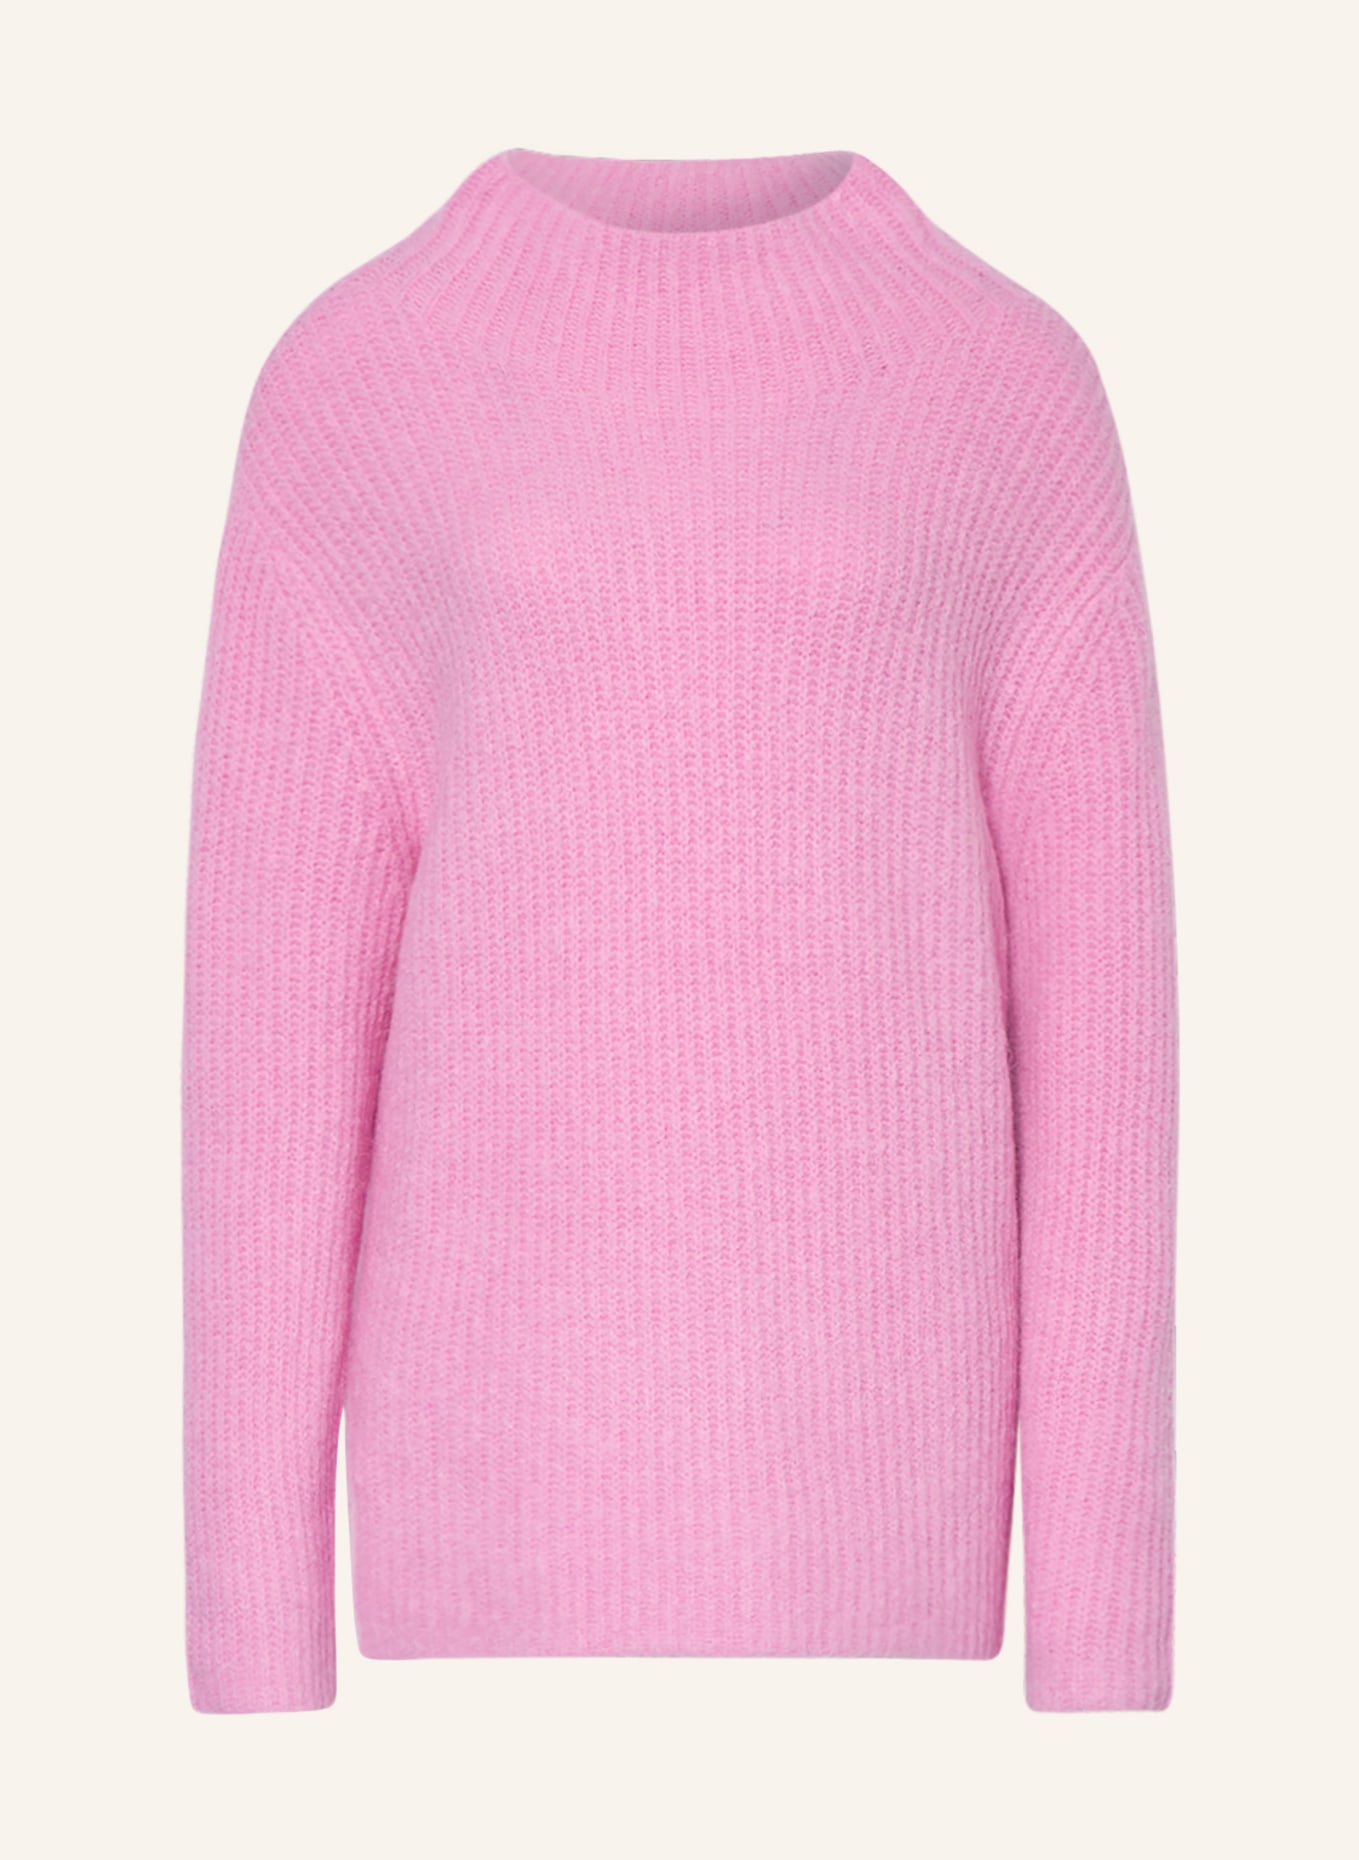 Свитер MRS & HUGS mit Alpaka, розовый свитер gestuz alphagz mit alpaka экру